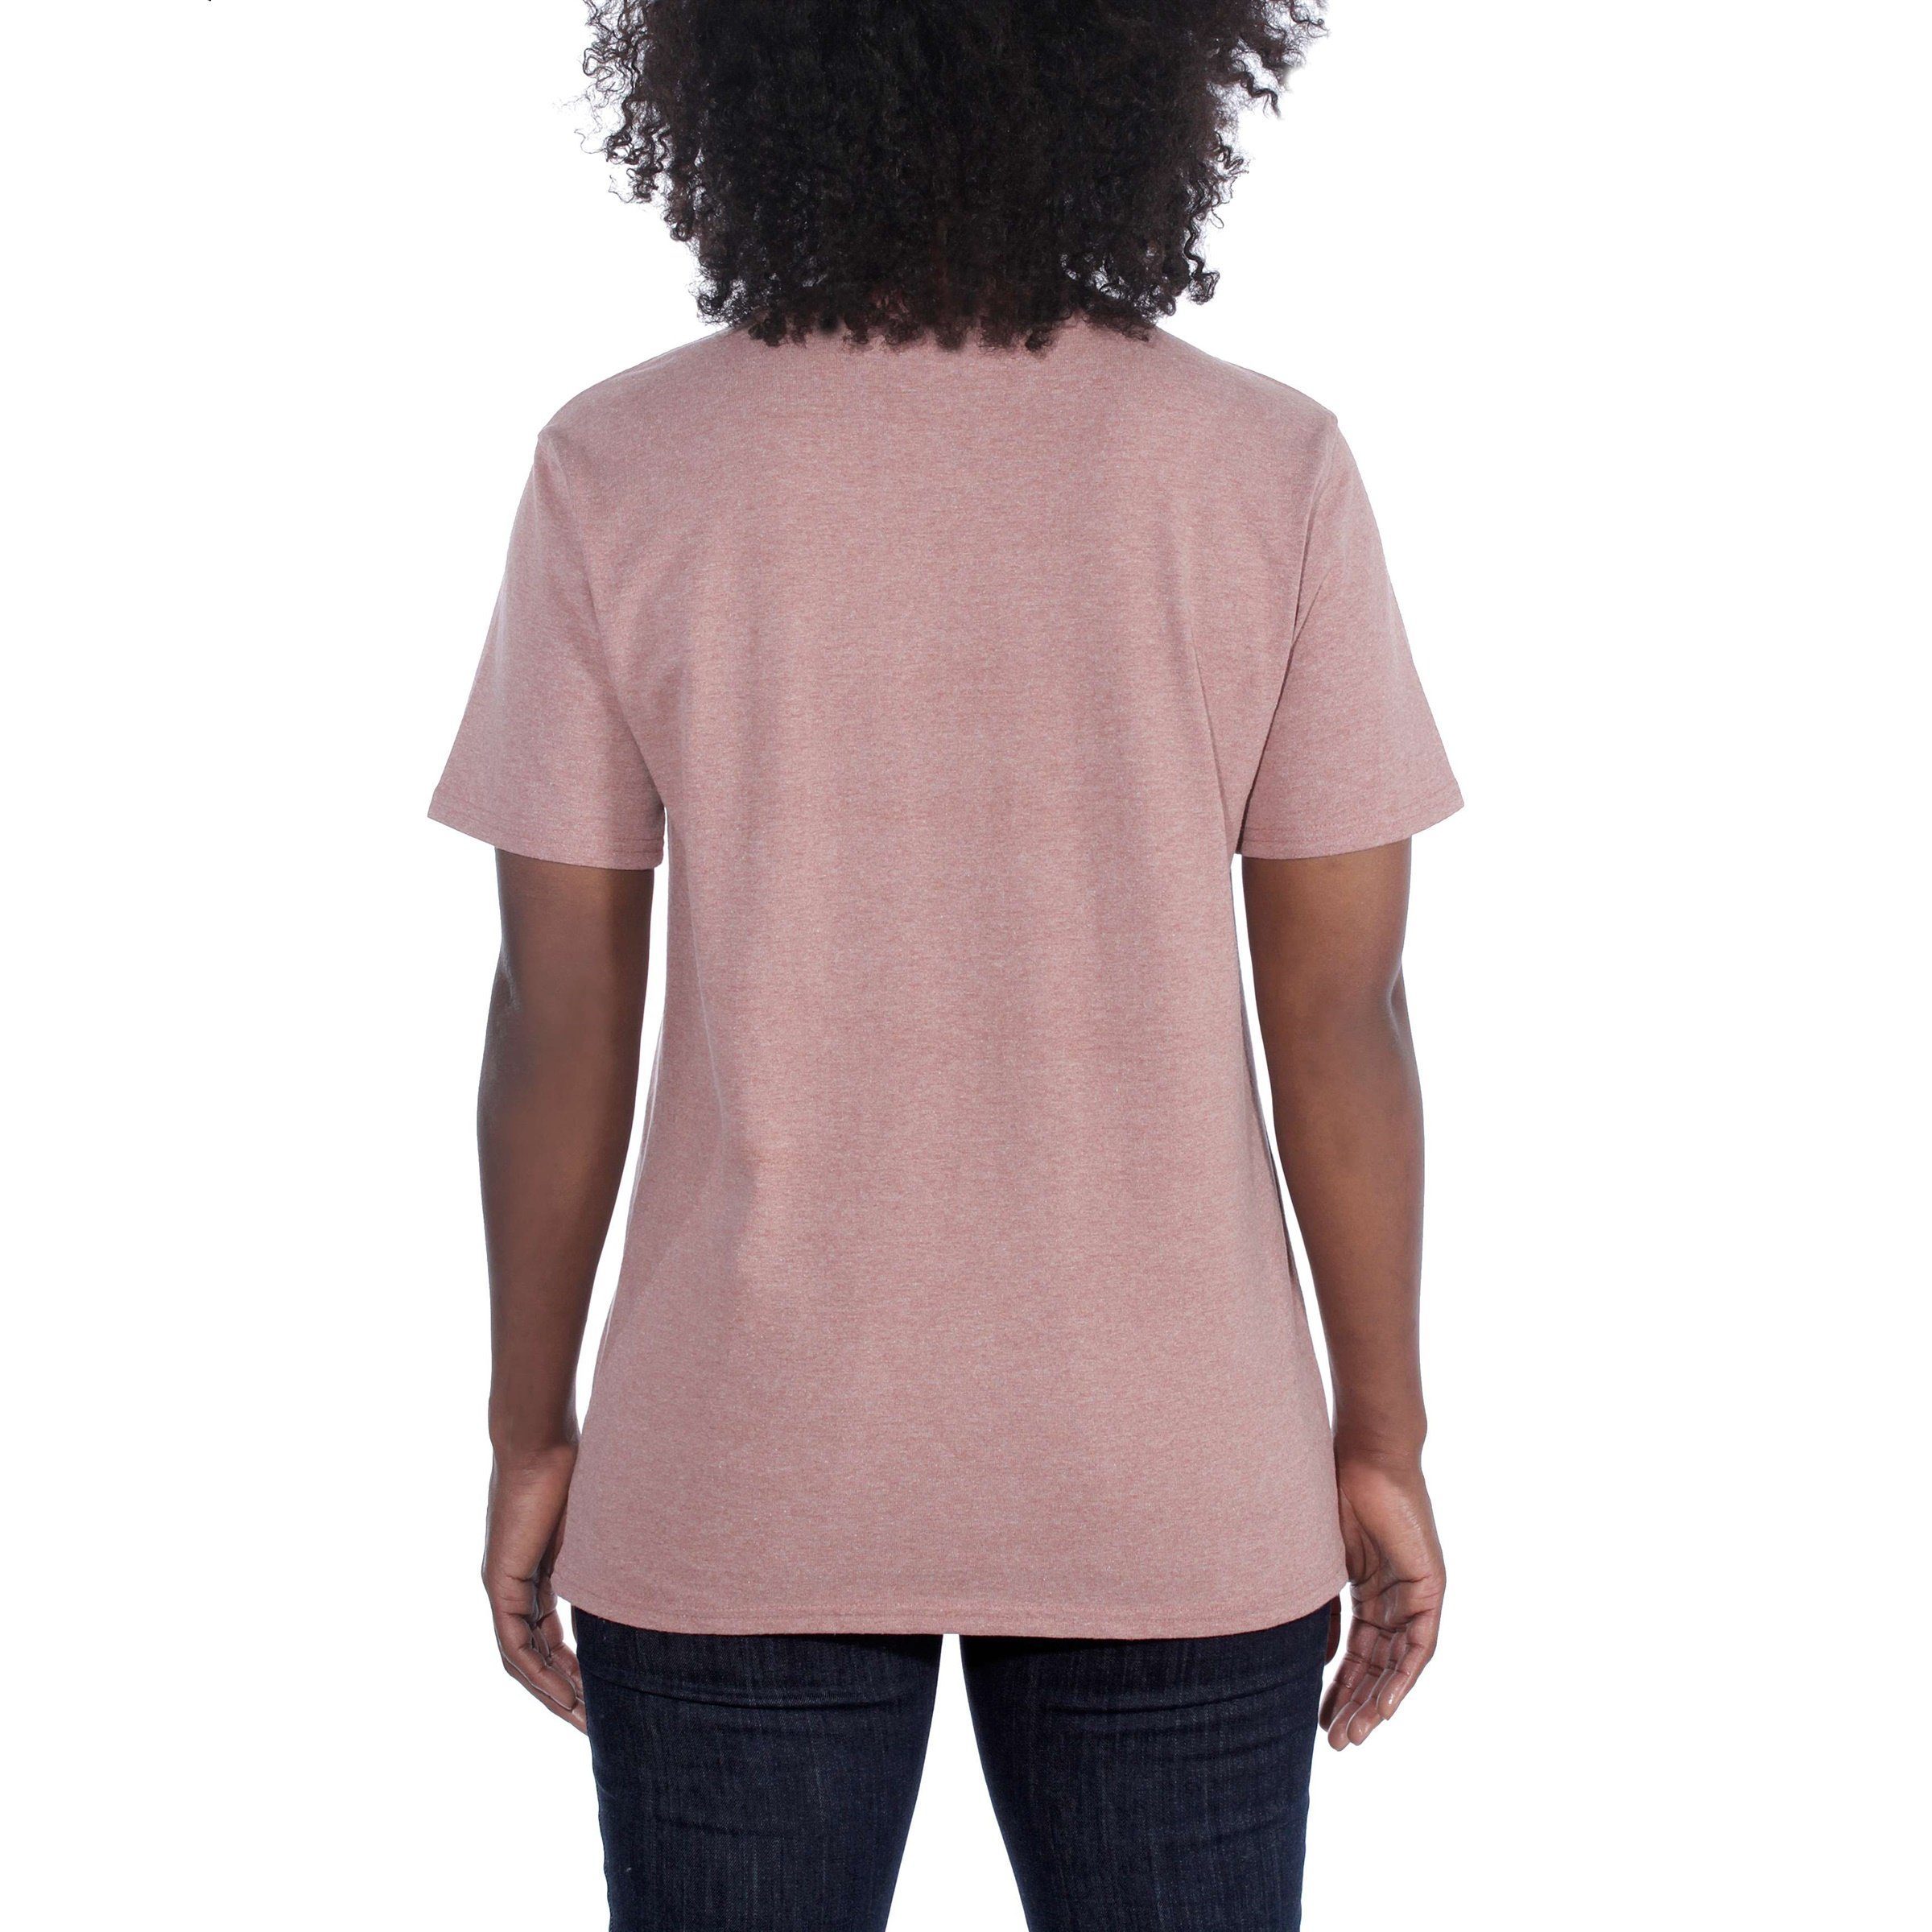 Heavyweight Carhartt blackberry Adult T-Shirt Carhartt heather Fit Pocket T-Shirt Damen Short-Sleeve Loose